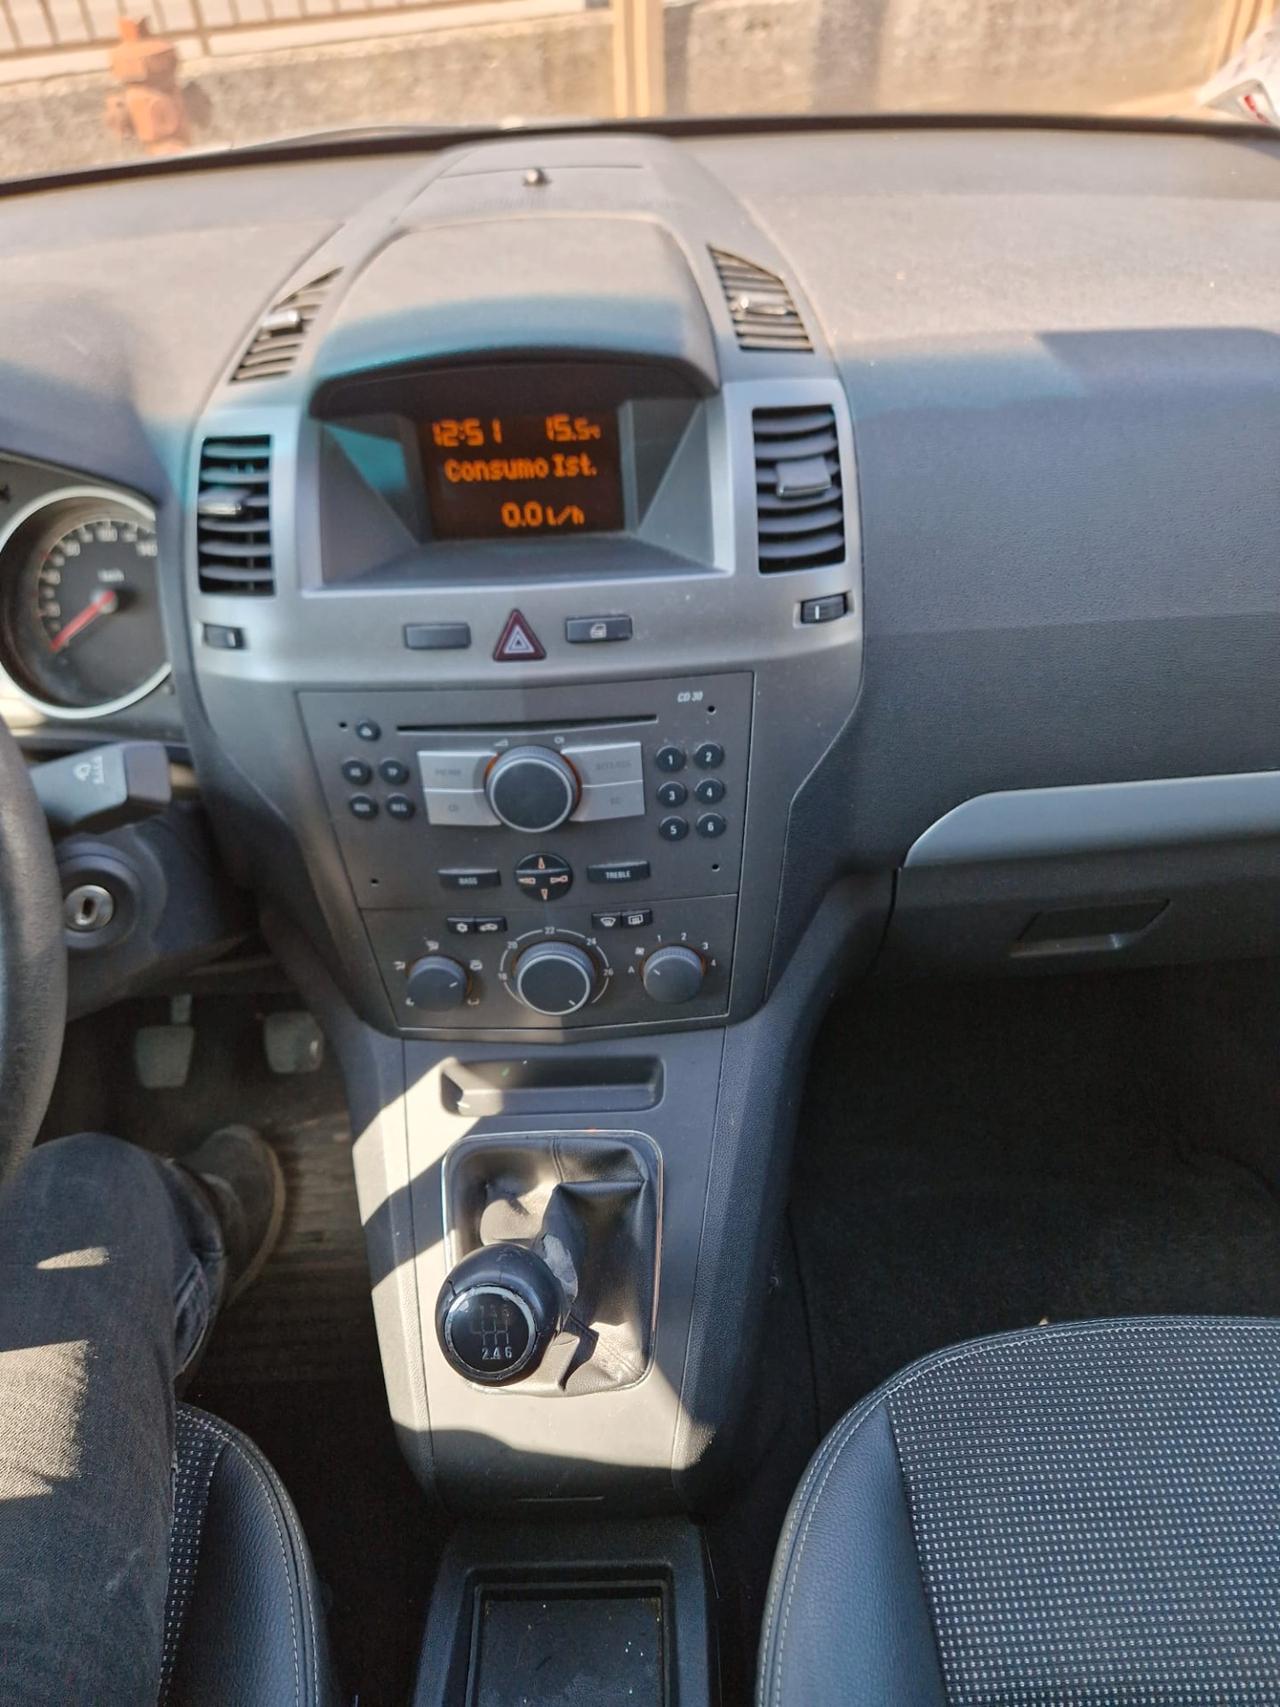 Opel Zafira 1.9 16V CDTI 150CV Cosmo